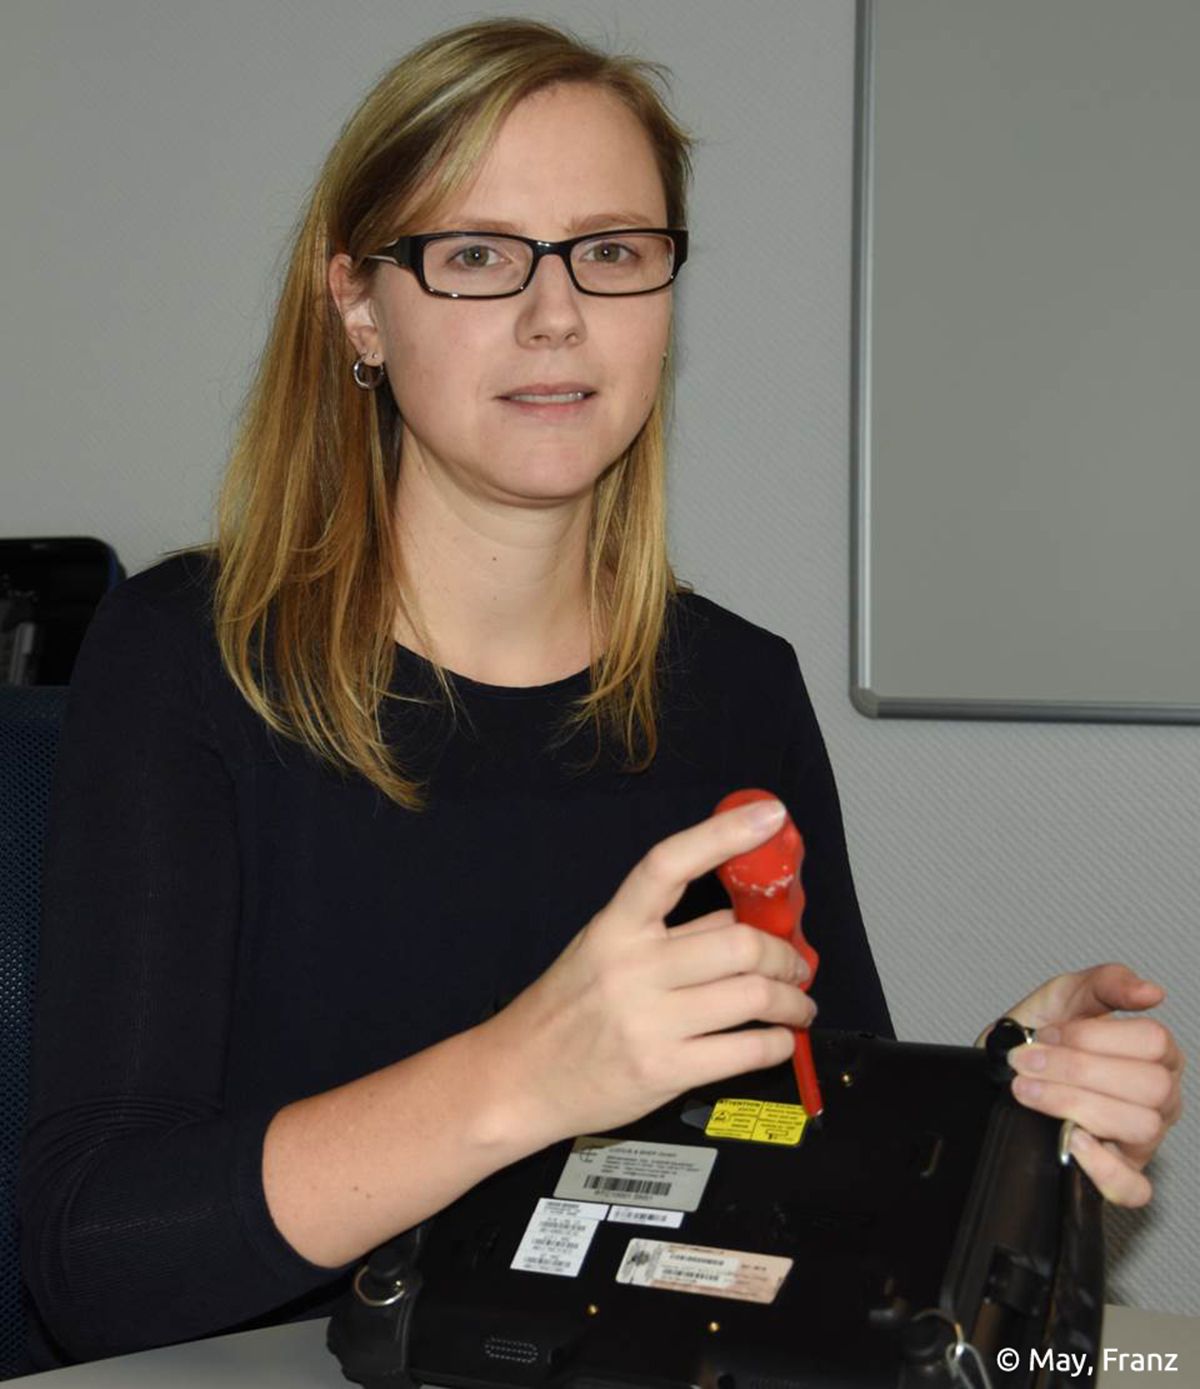 Melanie Pütz, Softwareingenieurin bei S.E.A. Datentechnik GmbH in Troisdorf ist begeistert von Technik. /Bildquelle: May, Franz